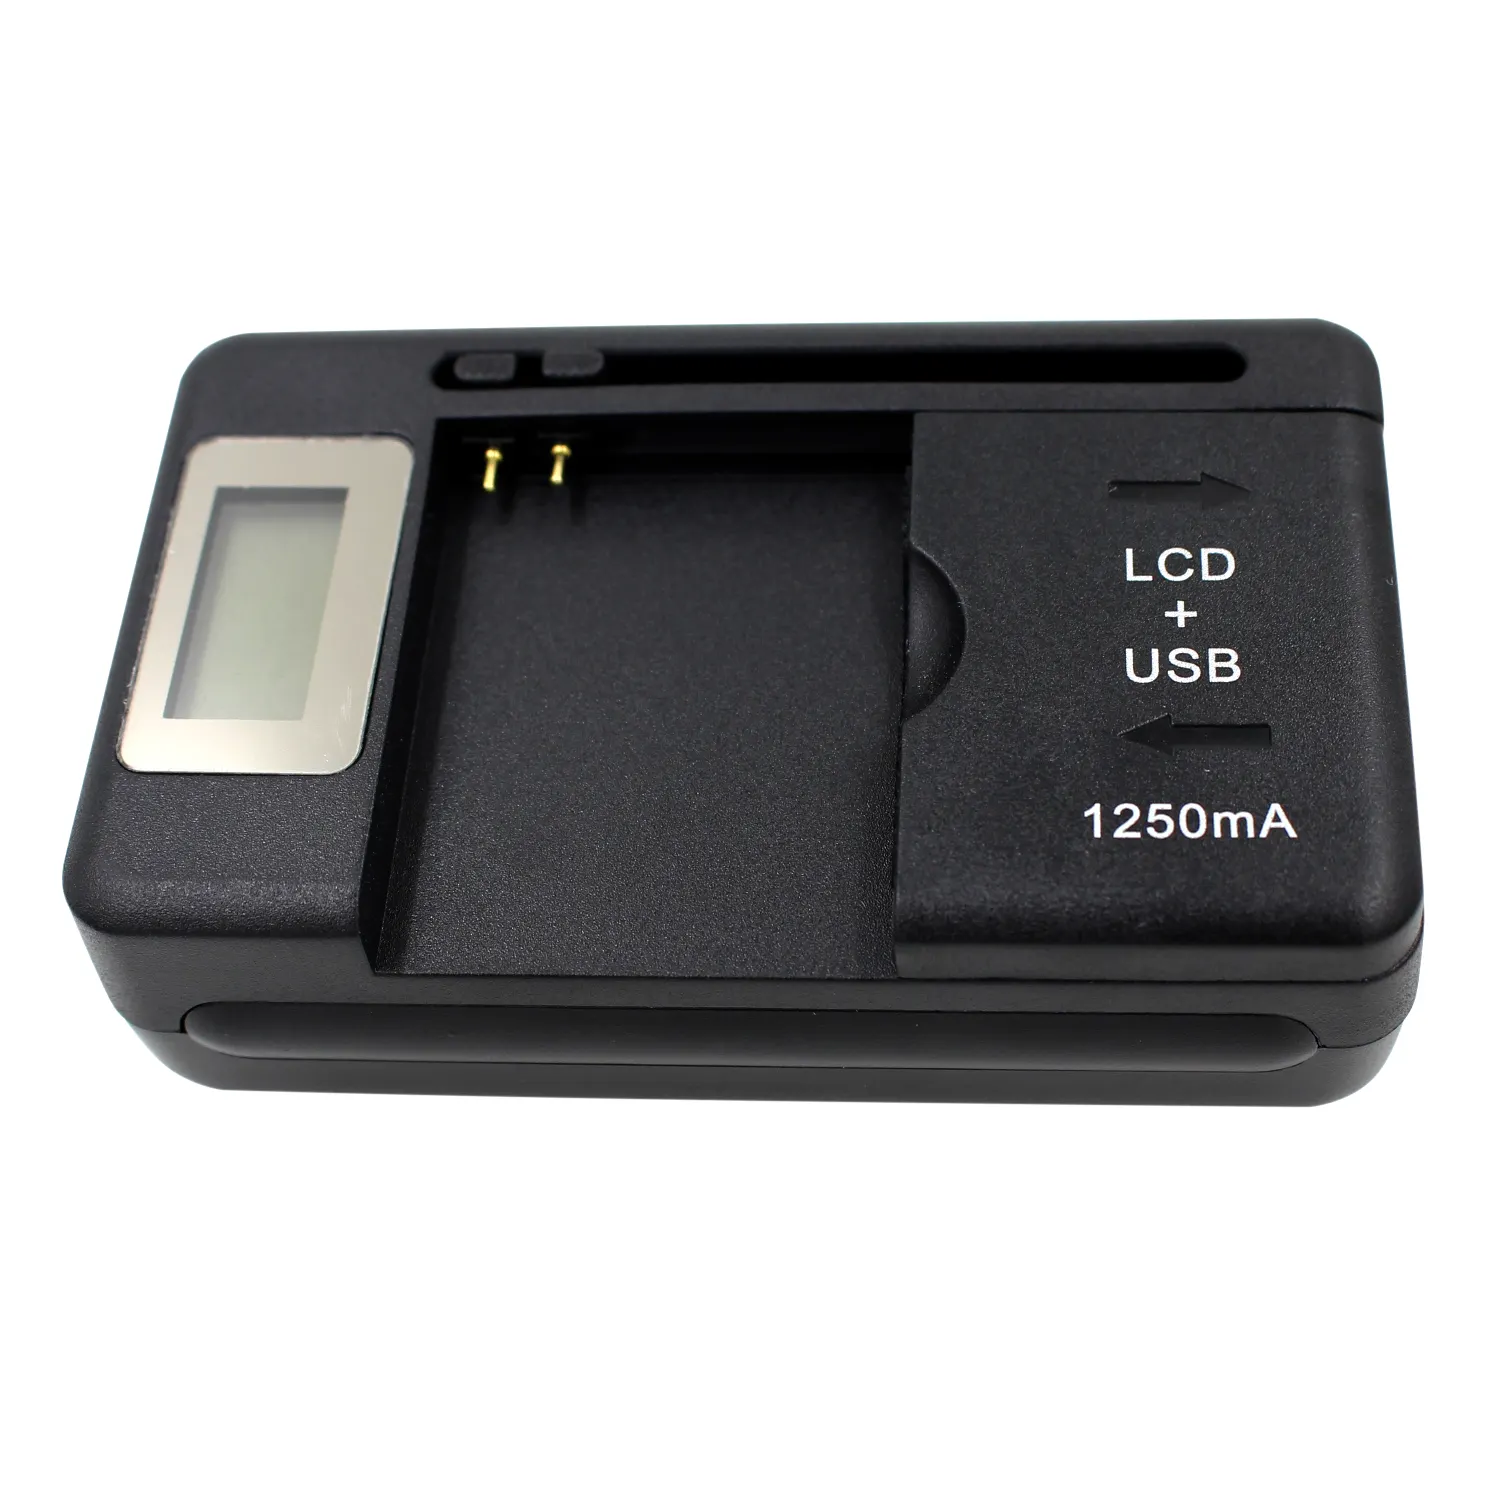 새로운 충전기 드 배터리 LCD 디스플레이 빠른 휴대 전화 리튬 ss-8/ss8 yiboyuan 카가도르 범용 배터리 충전기 USB 포트